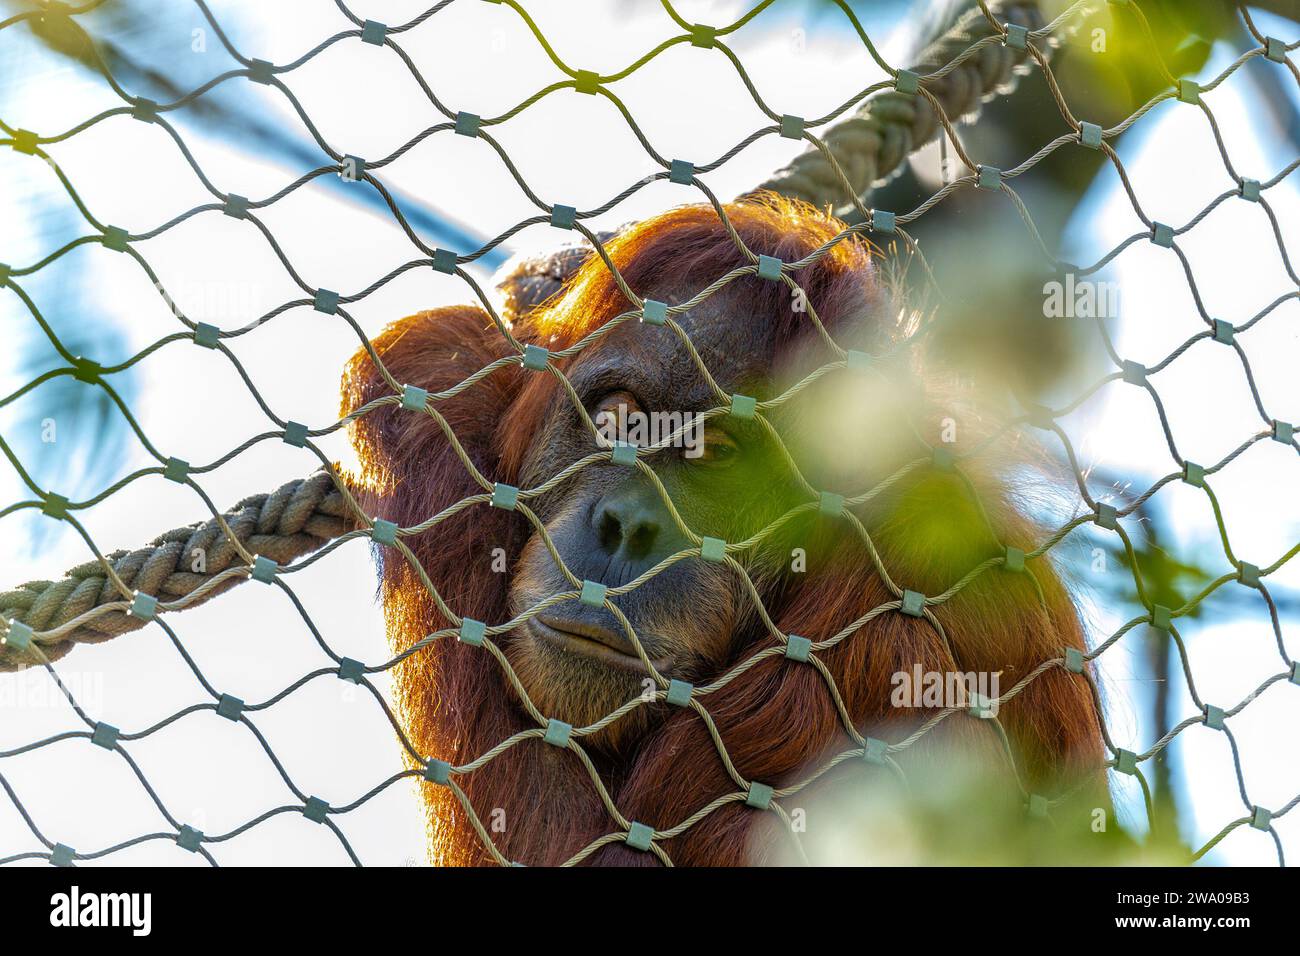 Pongo pygmaeus, der Orangutan, lebt in den südostasiatischen Regenwäldern. Mit seinen intelligenten Augen und seinem sanften Auftreten symbolisiert dieser große Affe den im Stockfoto